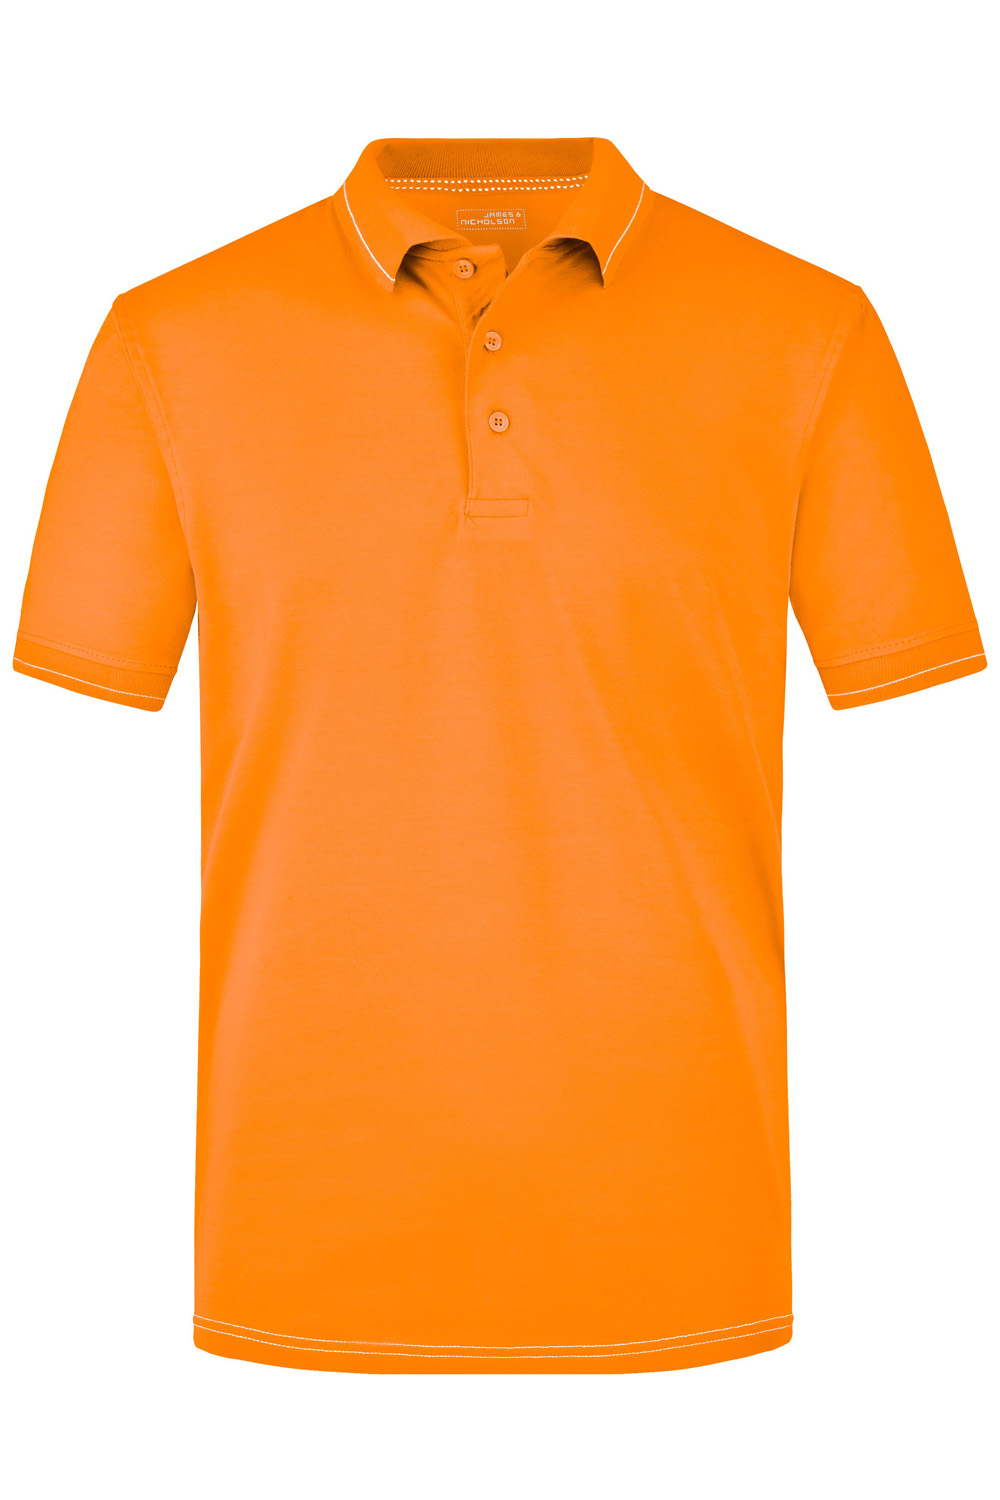 Poloshirt kurzarm James&Nicholson Men's Elastic Polo JN569 orange/white